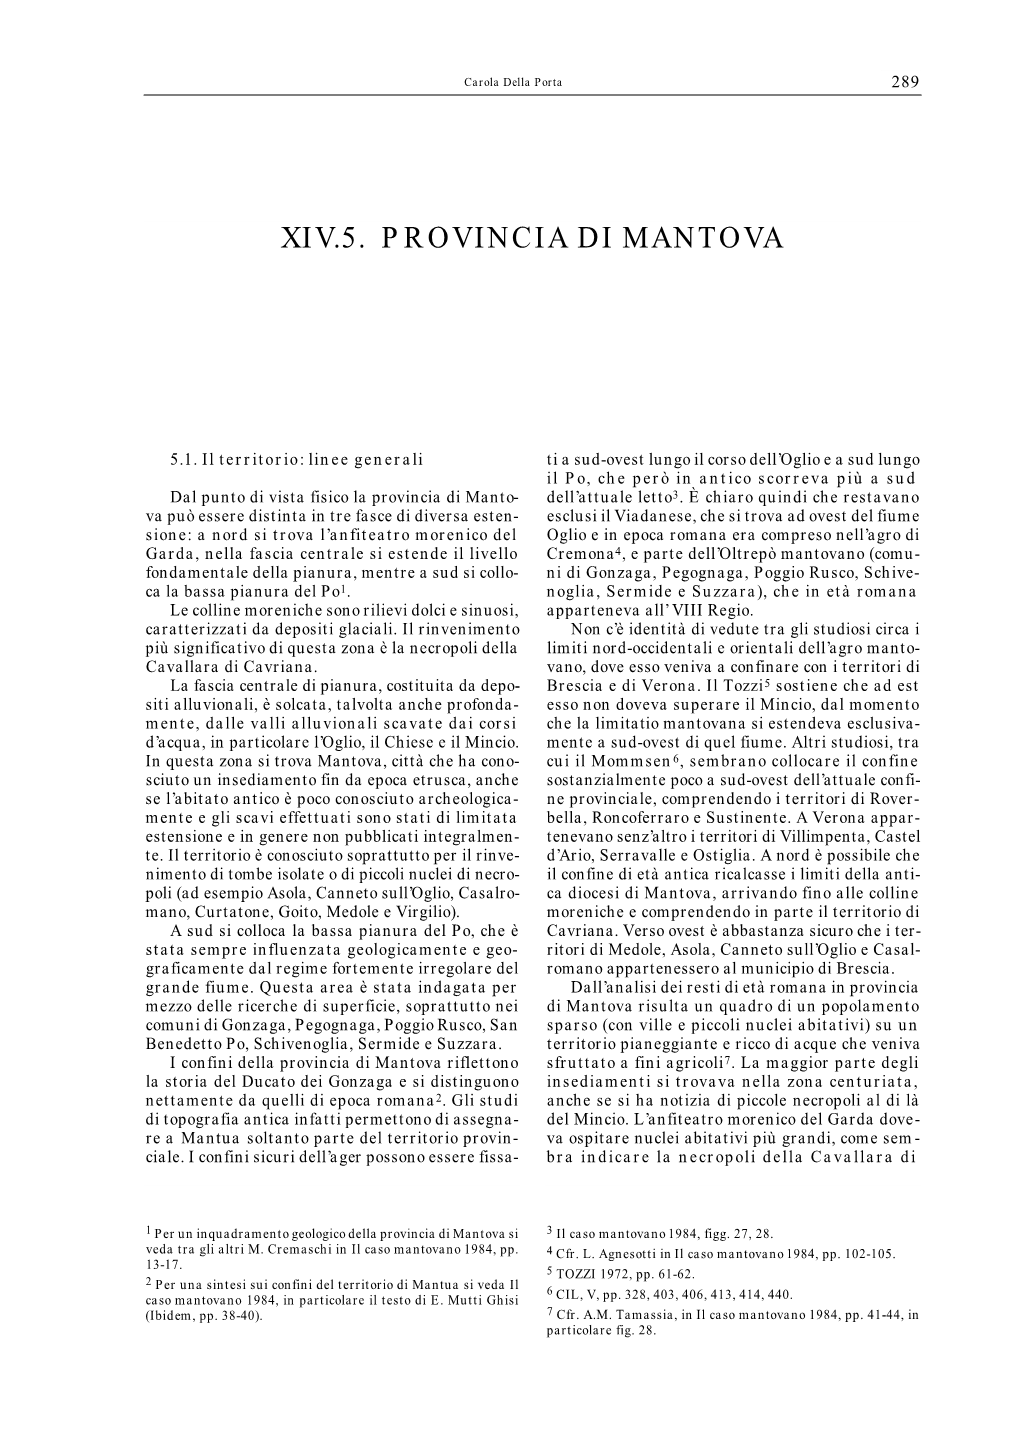 Xiv.5. Provincia Di Mantova